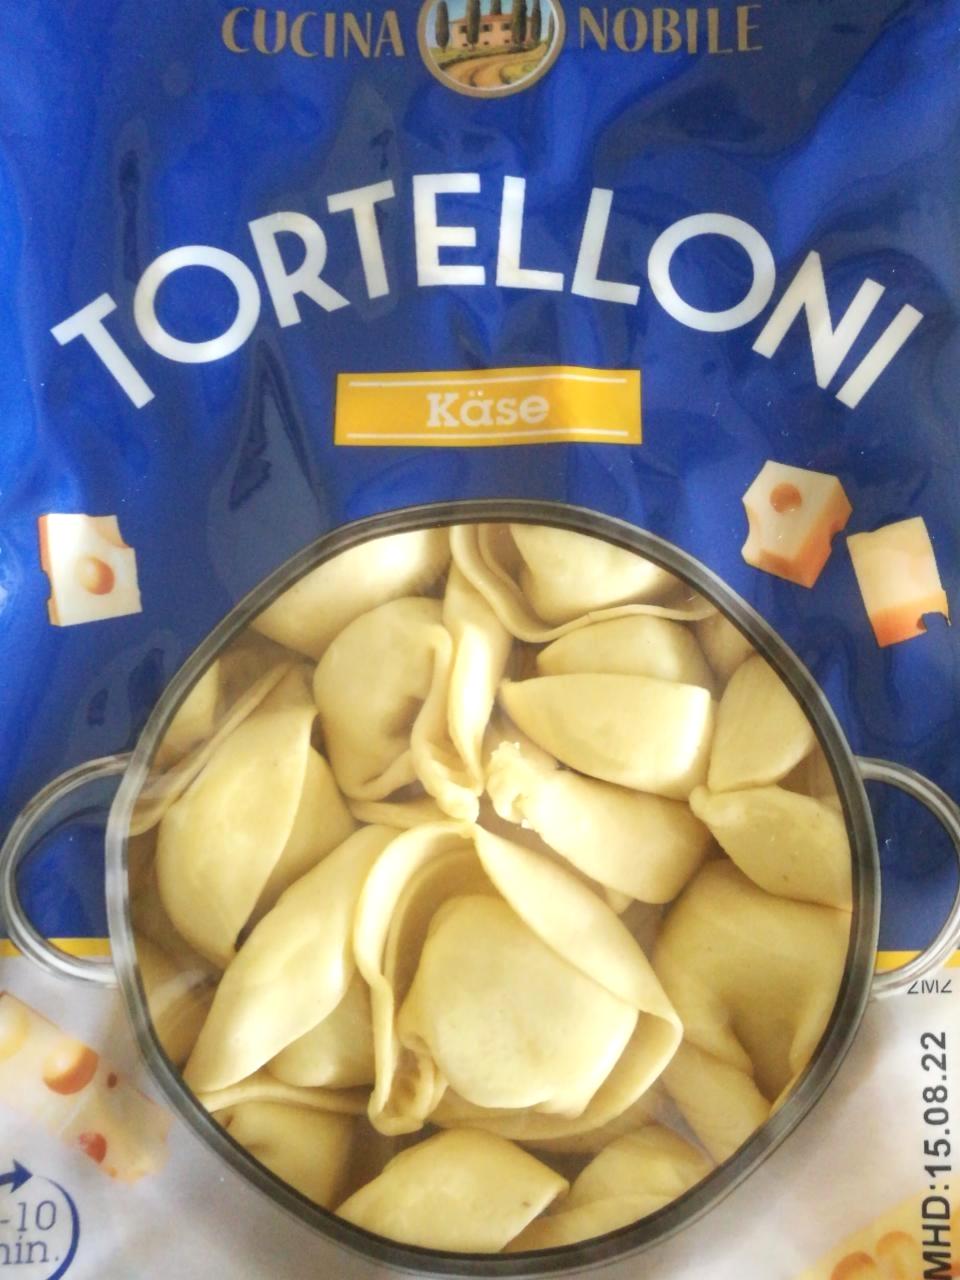 Képek - Tortelloni - sajttal töltött tészta Cucina Nobile